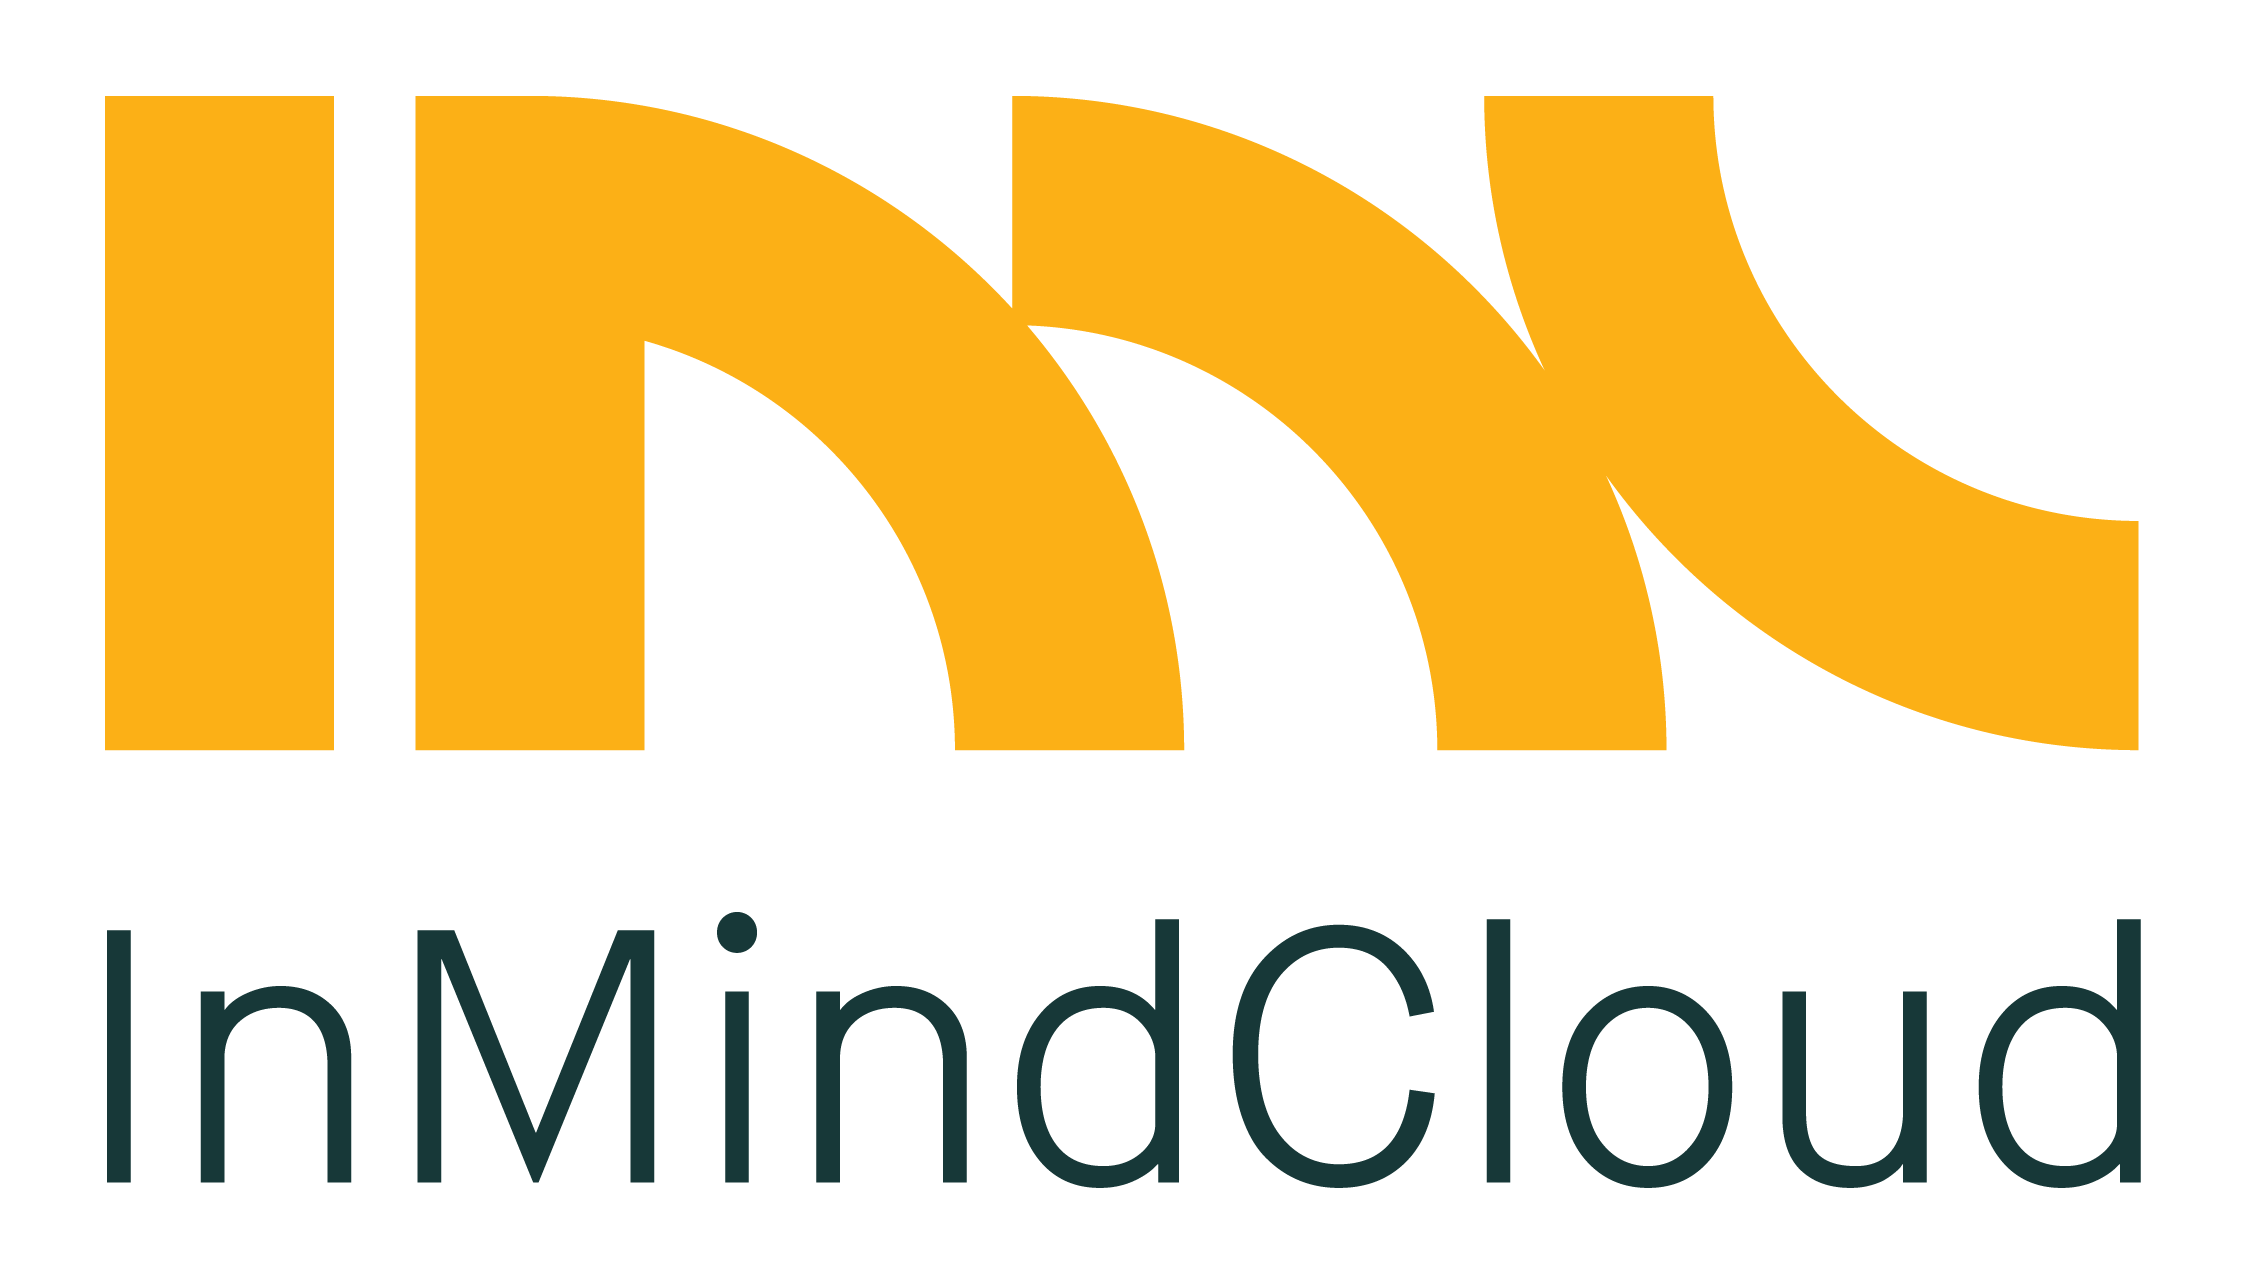 In Mind Cloud